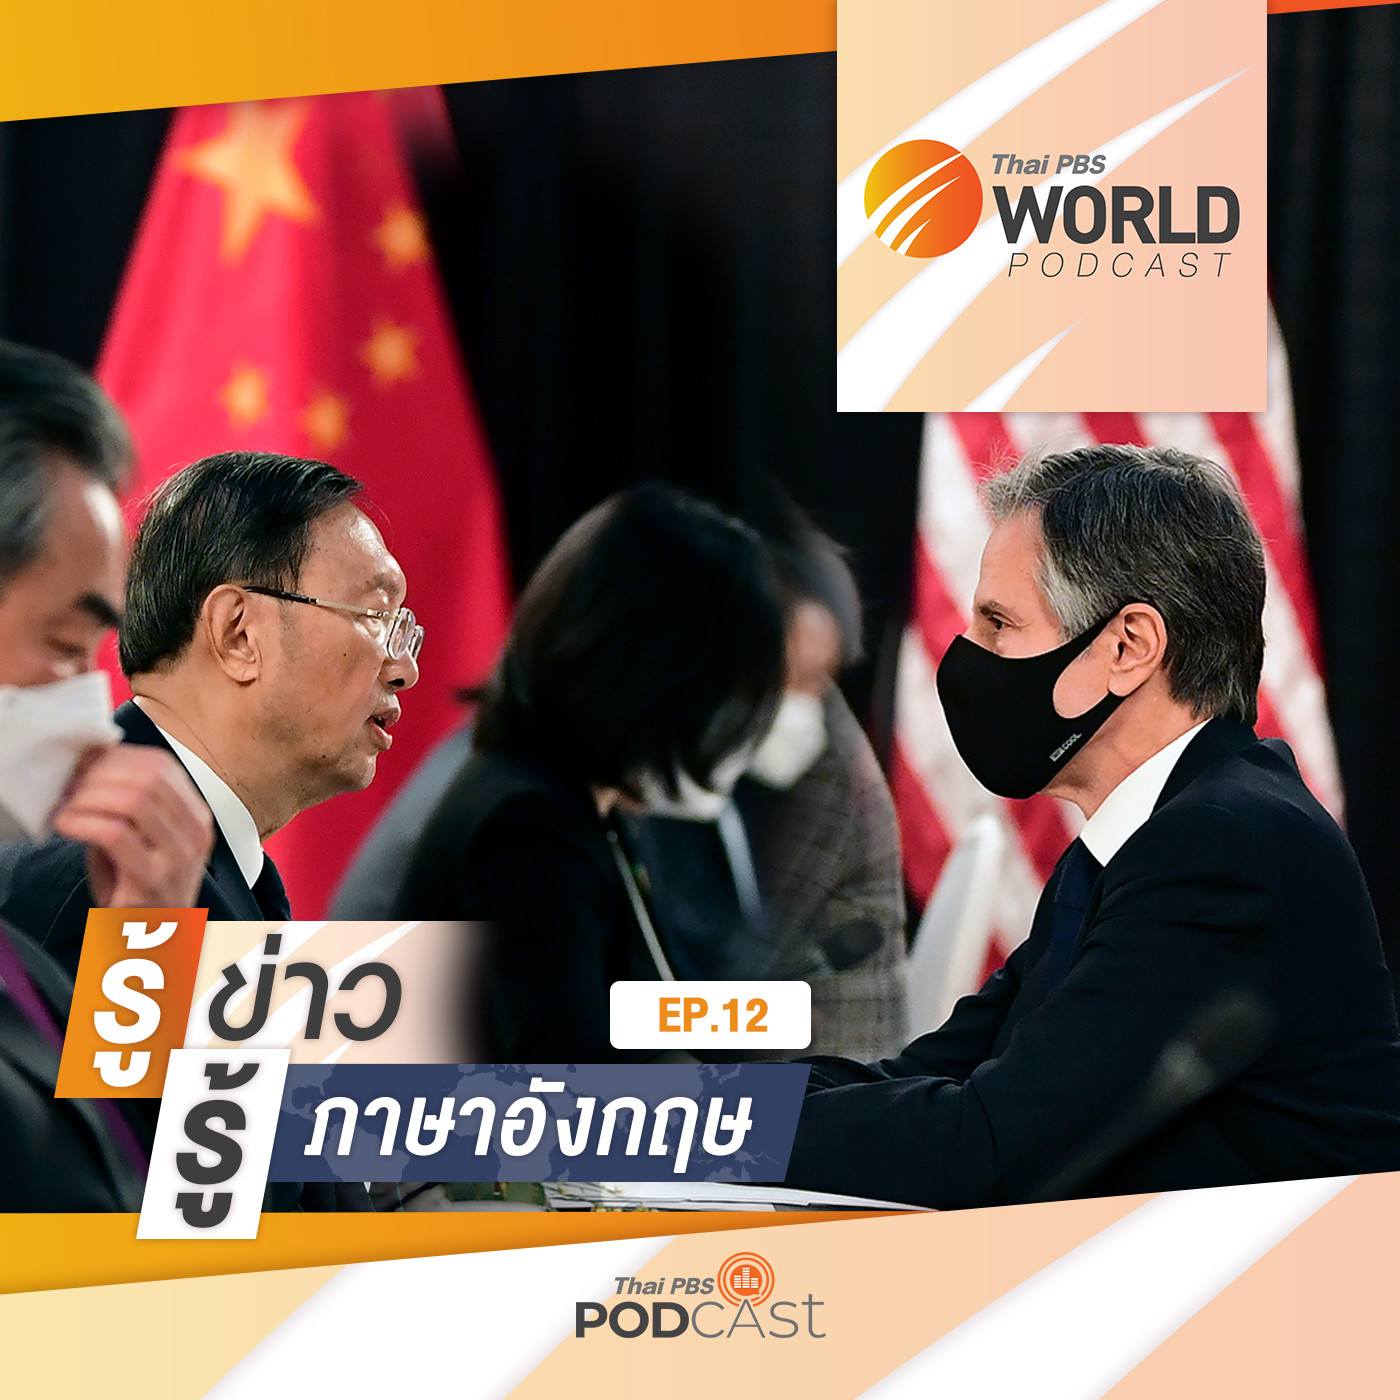 Thai PBS World Podcast - รู้ข่าว รู้ภาษาอังกฤษ EP. 12: รู้ข่าว รู้ภาษาอังกฤษ - โต้เถียงเดือด! รัฐมนตรีต่างประเทศสหรัฐฯ - จีน พบกันครั้งแรกที่อะแลสกา